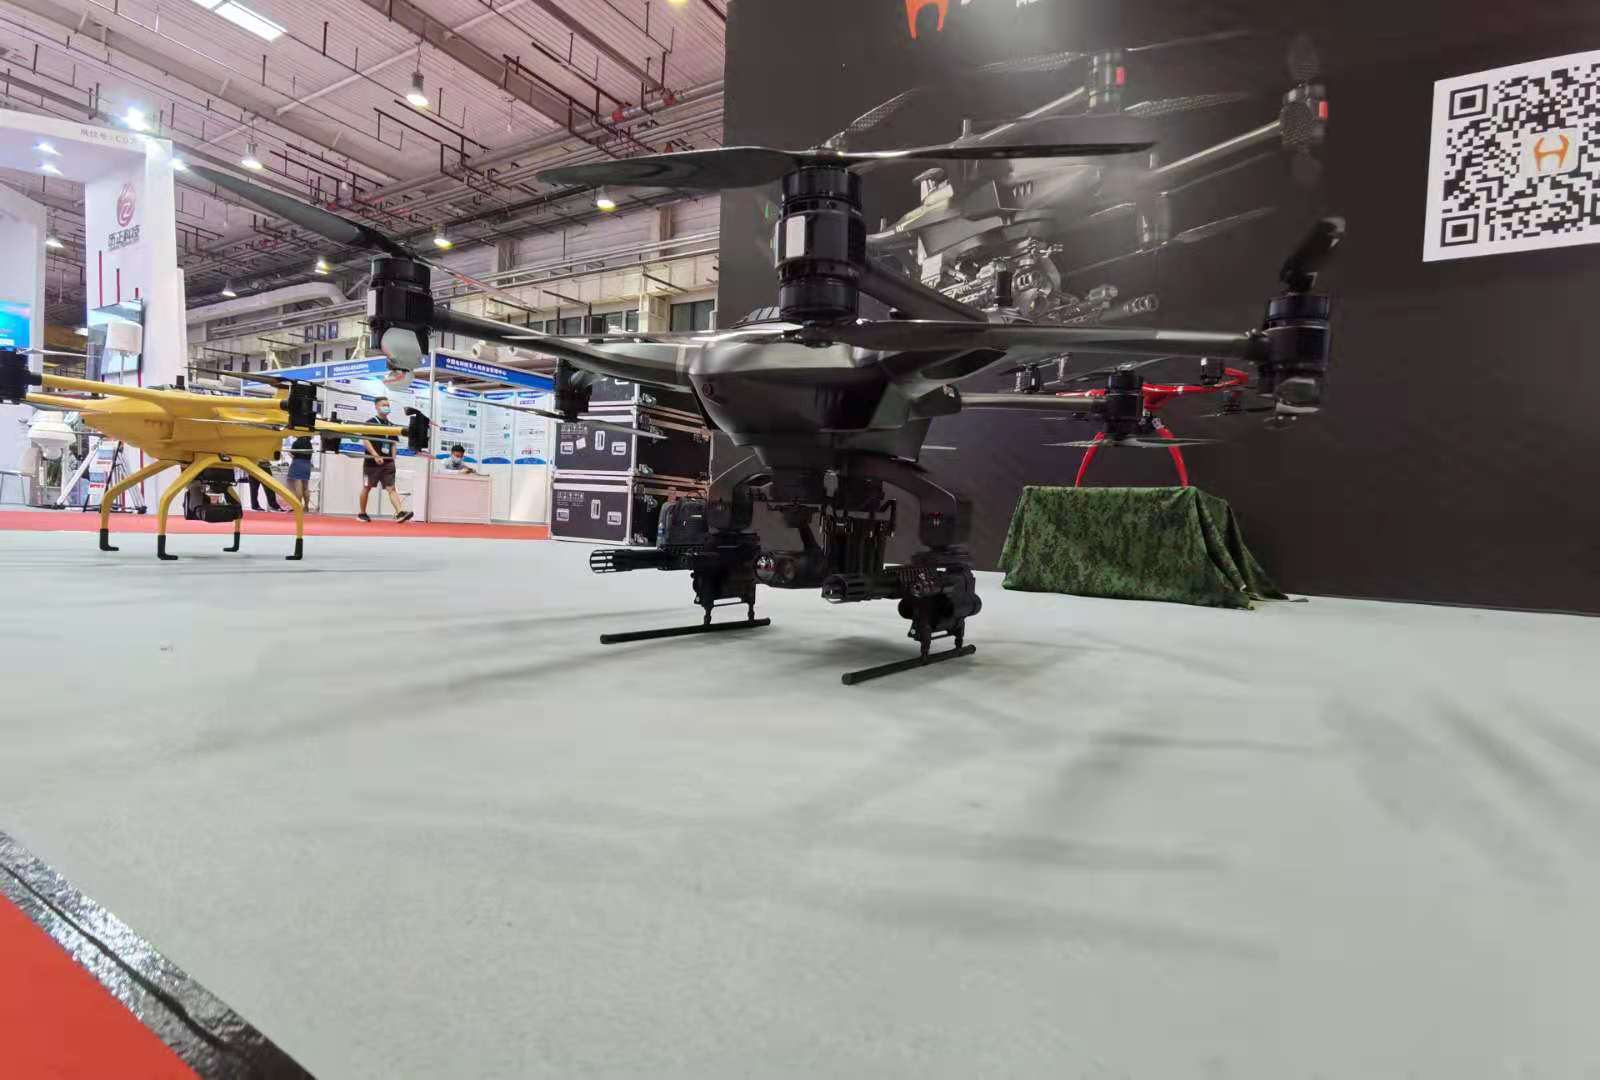 全球创新飞行影像系统领导者DJI 大疆创新携旗下无人机系统产品及解决方案亮相2019年莫斯科国际航空航天博览会。 - DJI 大疆创新